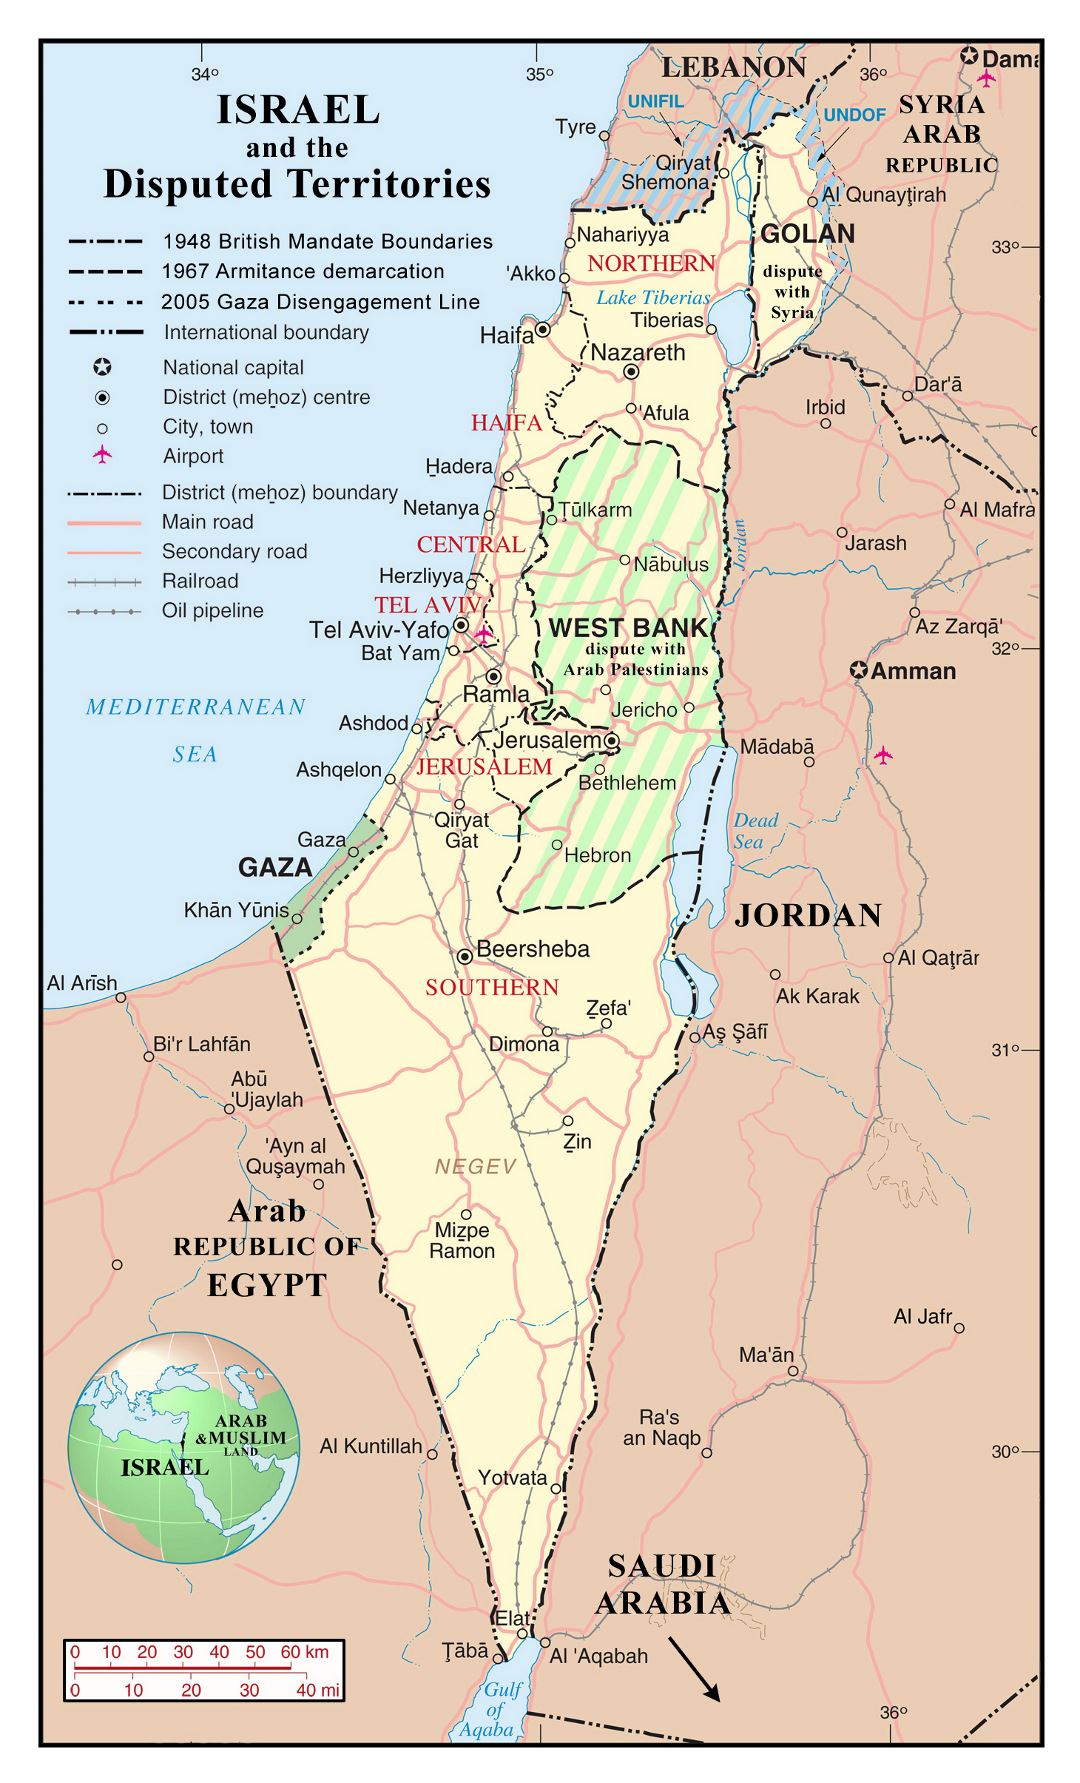 Grande detallado mapa político y administrativo de Israel con territorios en disputa